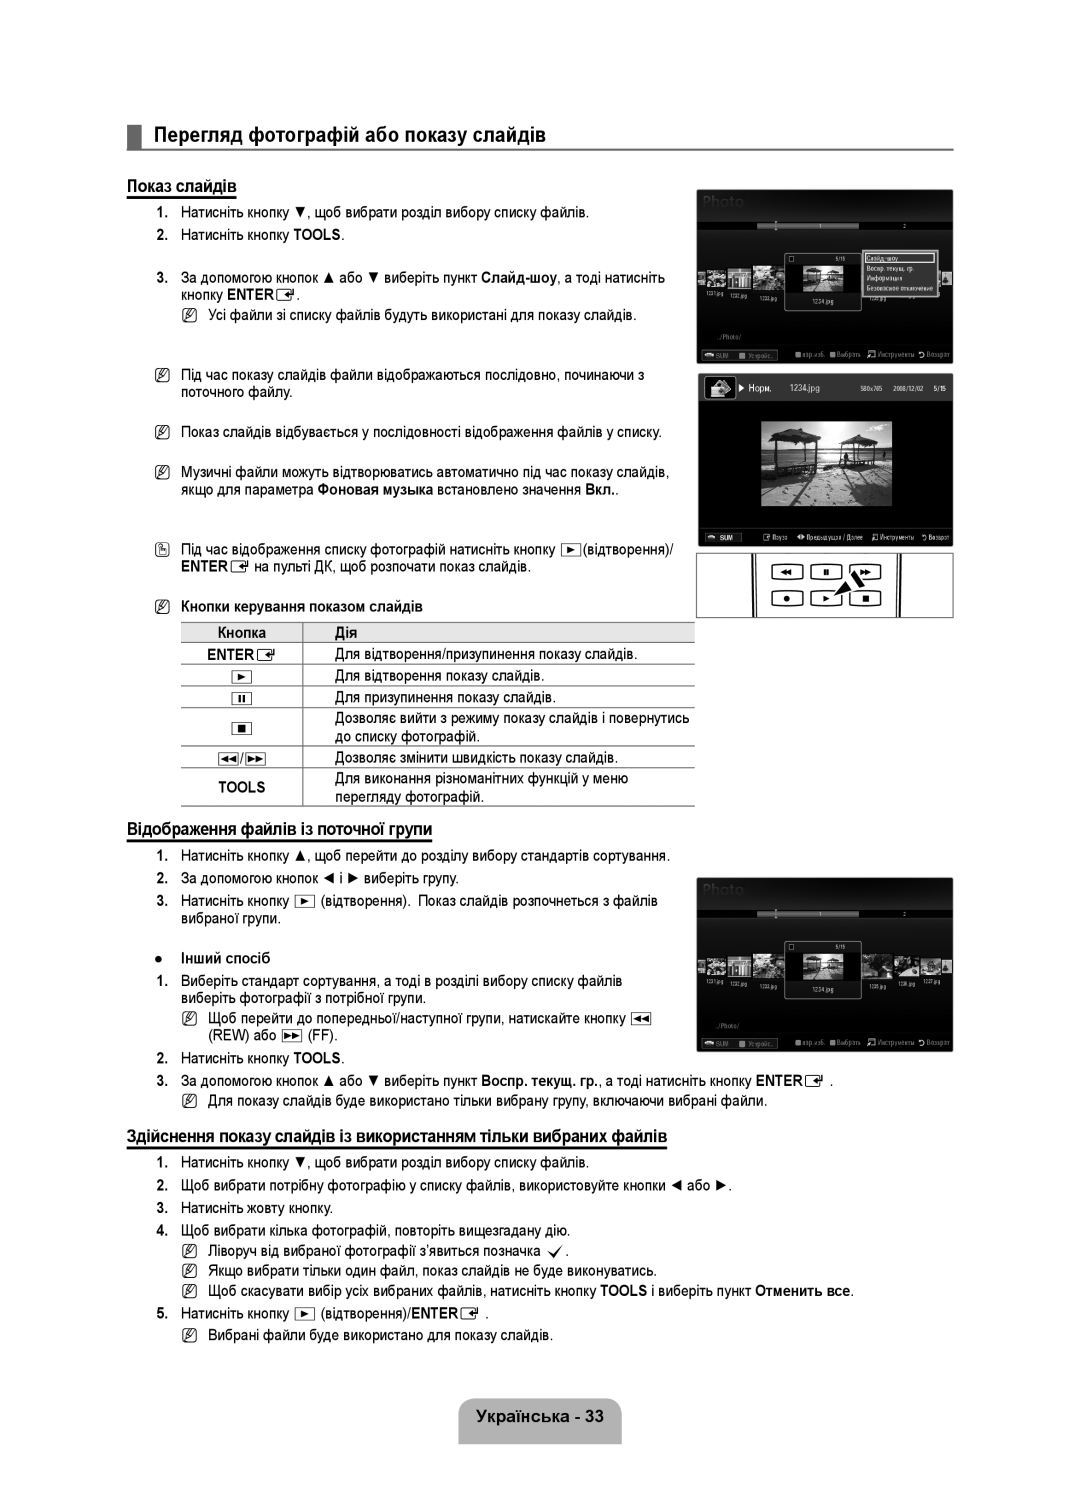 Samsung UE40B6000VWXZG Перегляд фотографій або показу слайдів, Показ слайдів, Відображення файлів із поточної групи, π /μ 